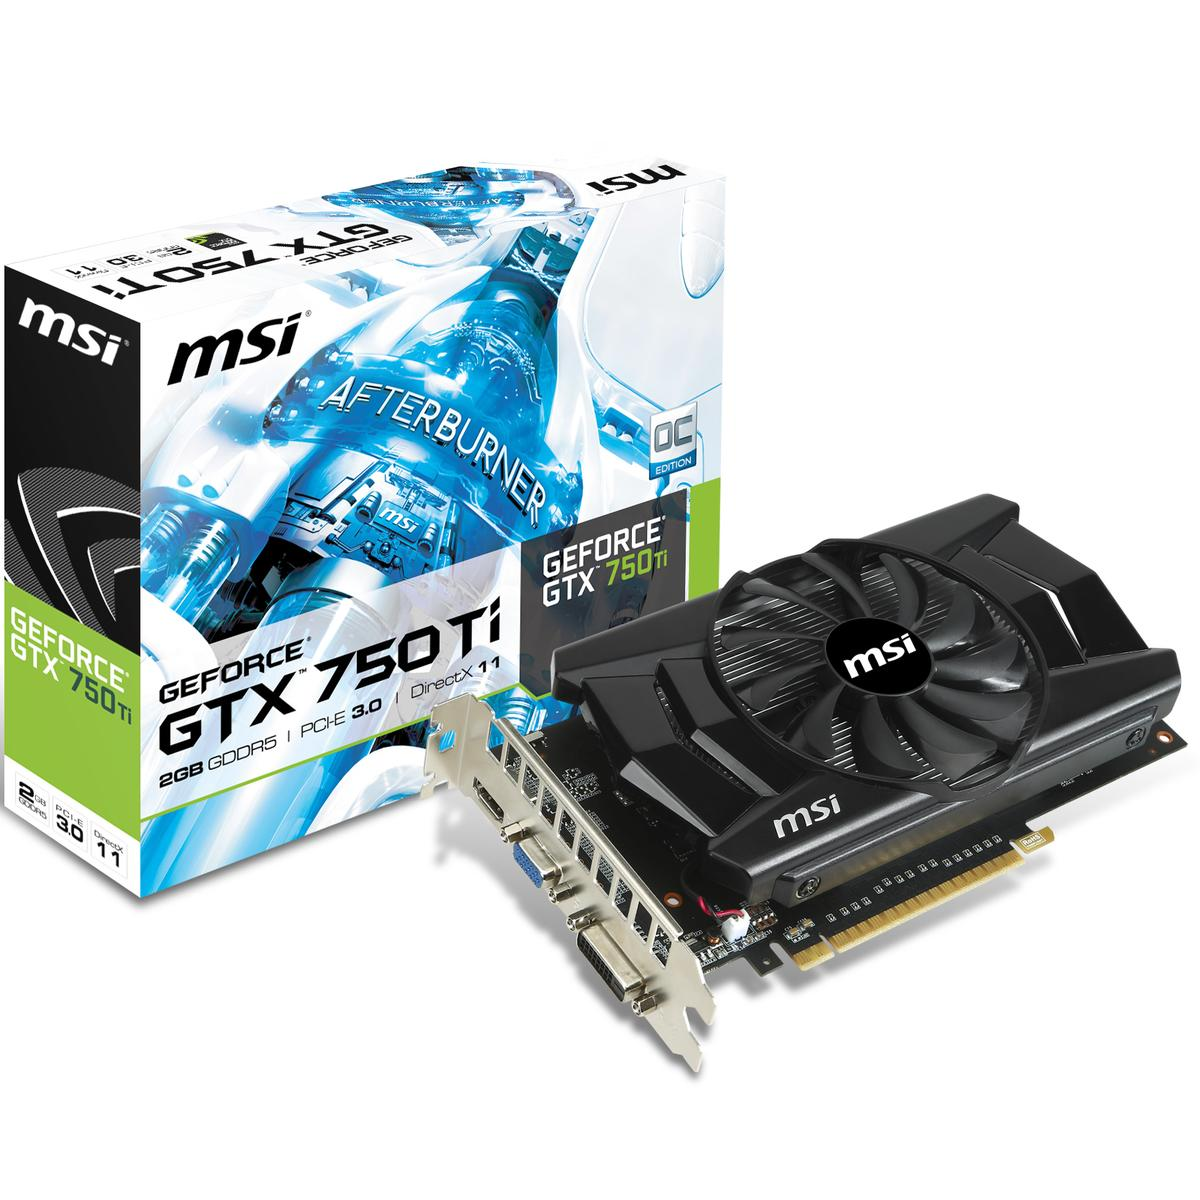 NVIDIA GeForce GTX 750 Ti Puntos de referencia de gráficas | PC Builds